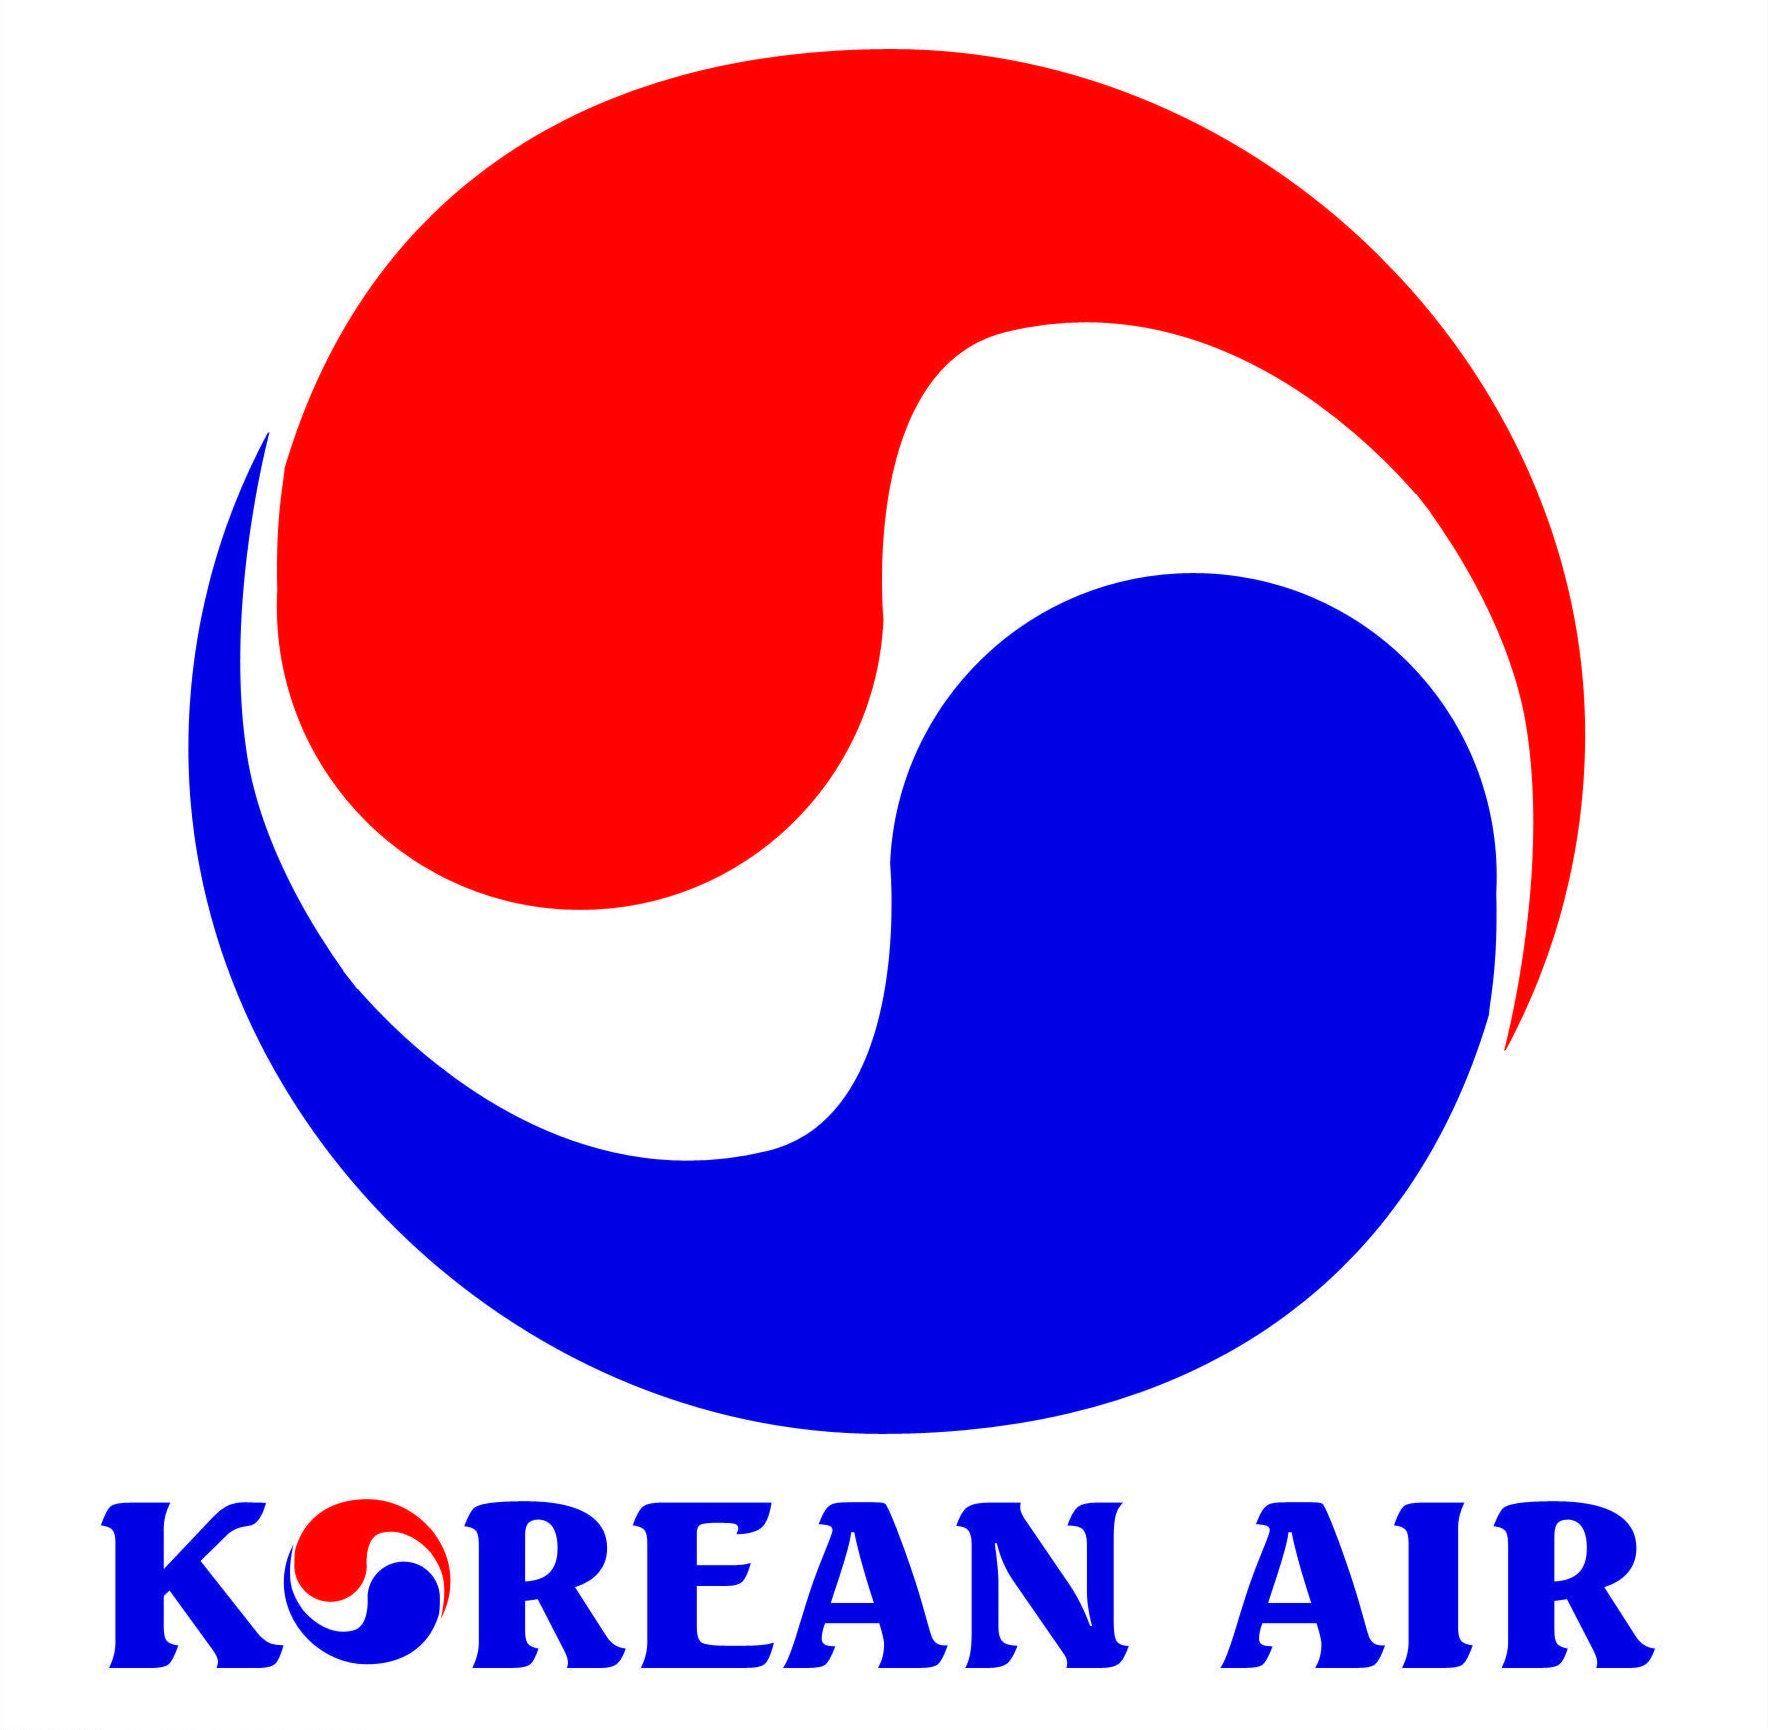 South Korean Airlines Logo - Korean Air (South Korean airline) | ctc presentation | Airline logo ...